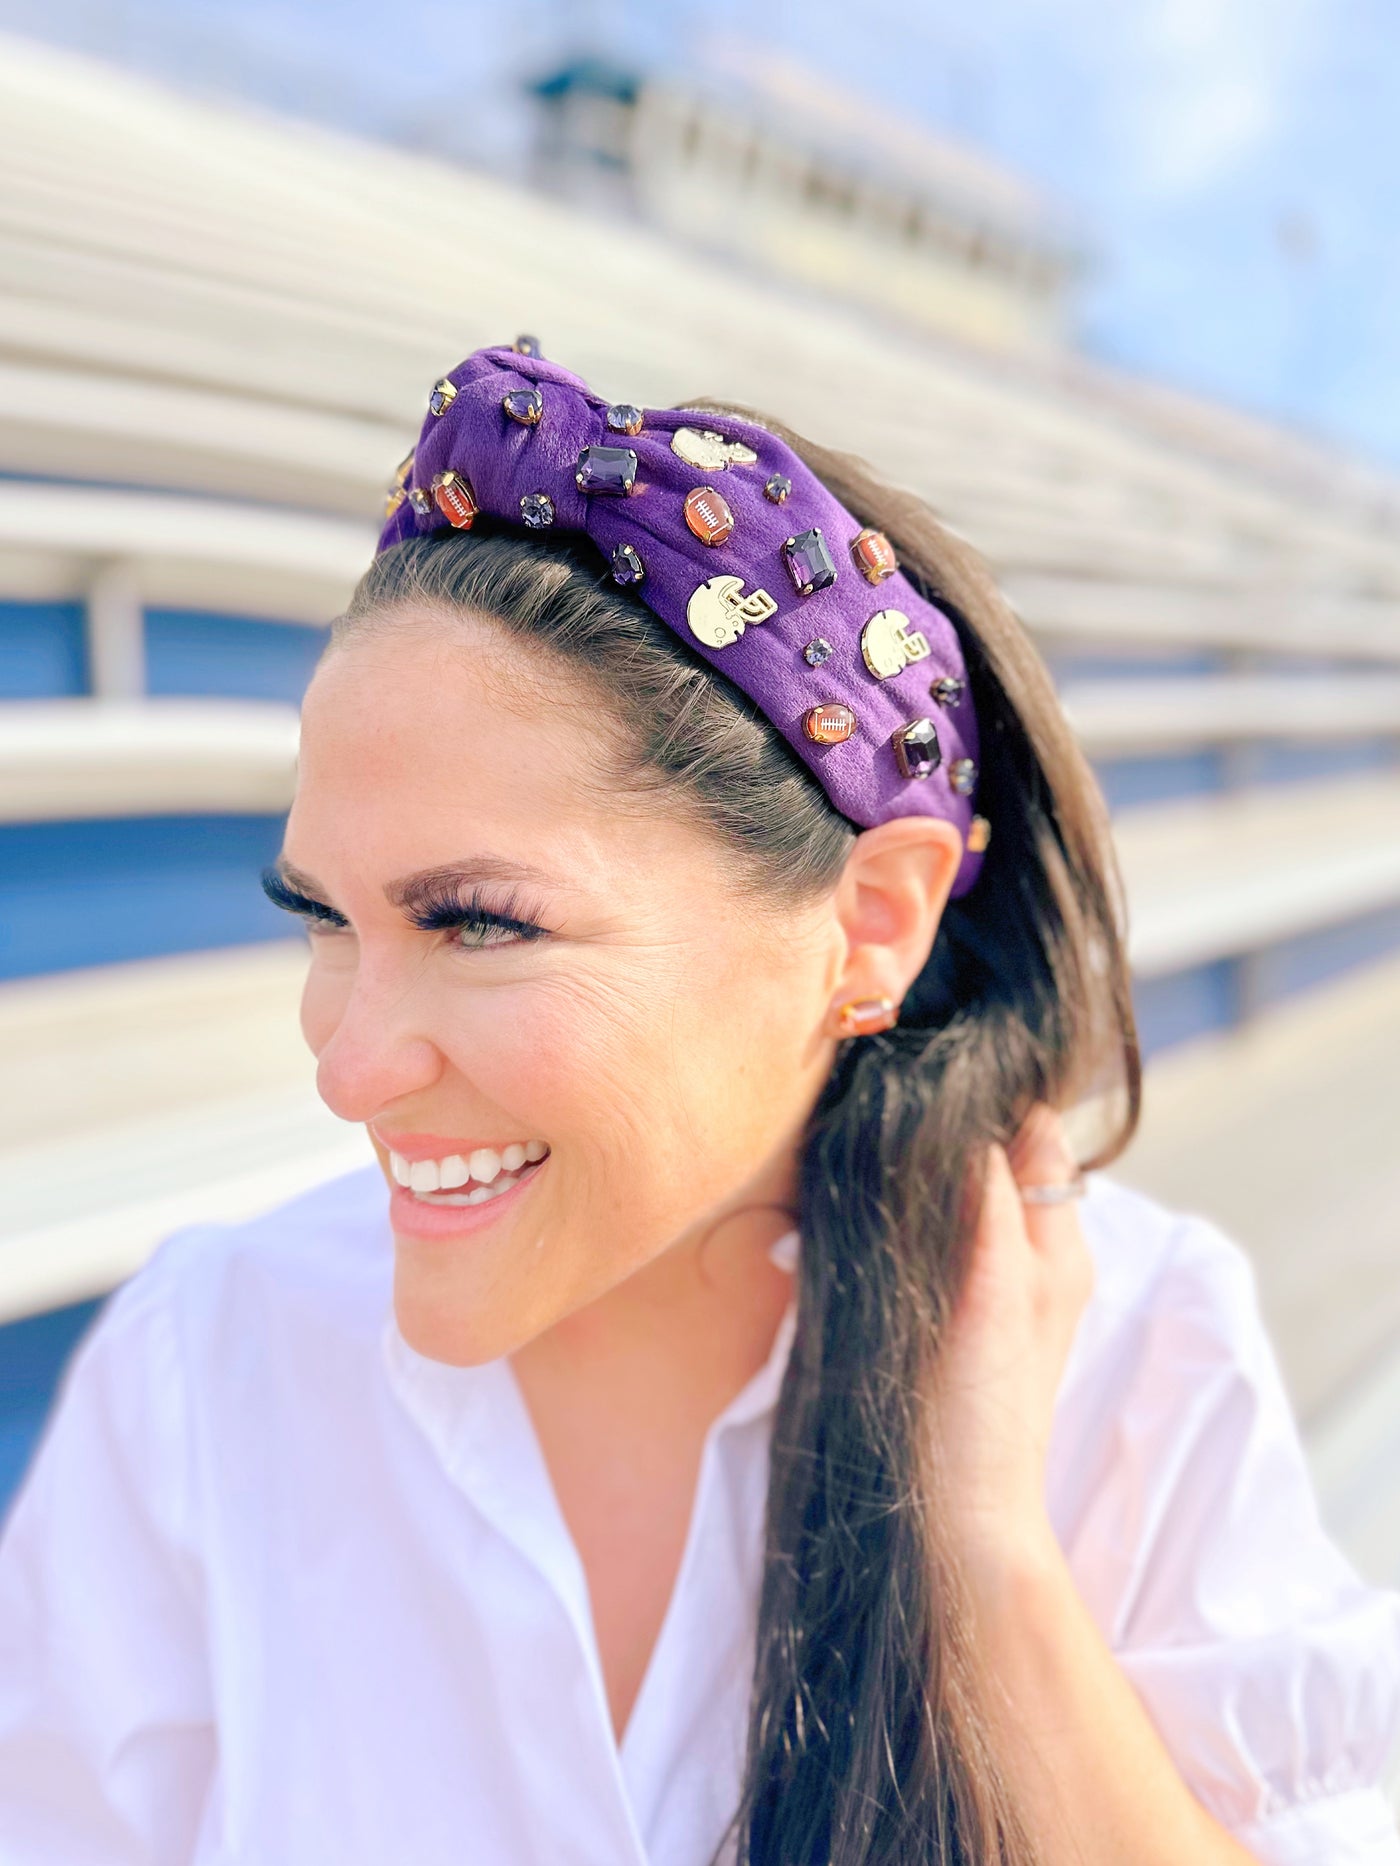 Fan Gear Football Headband in Purple